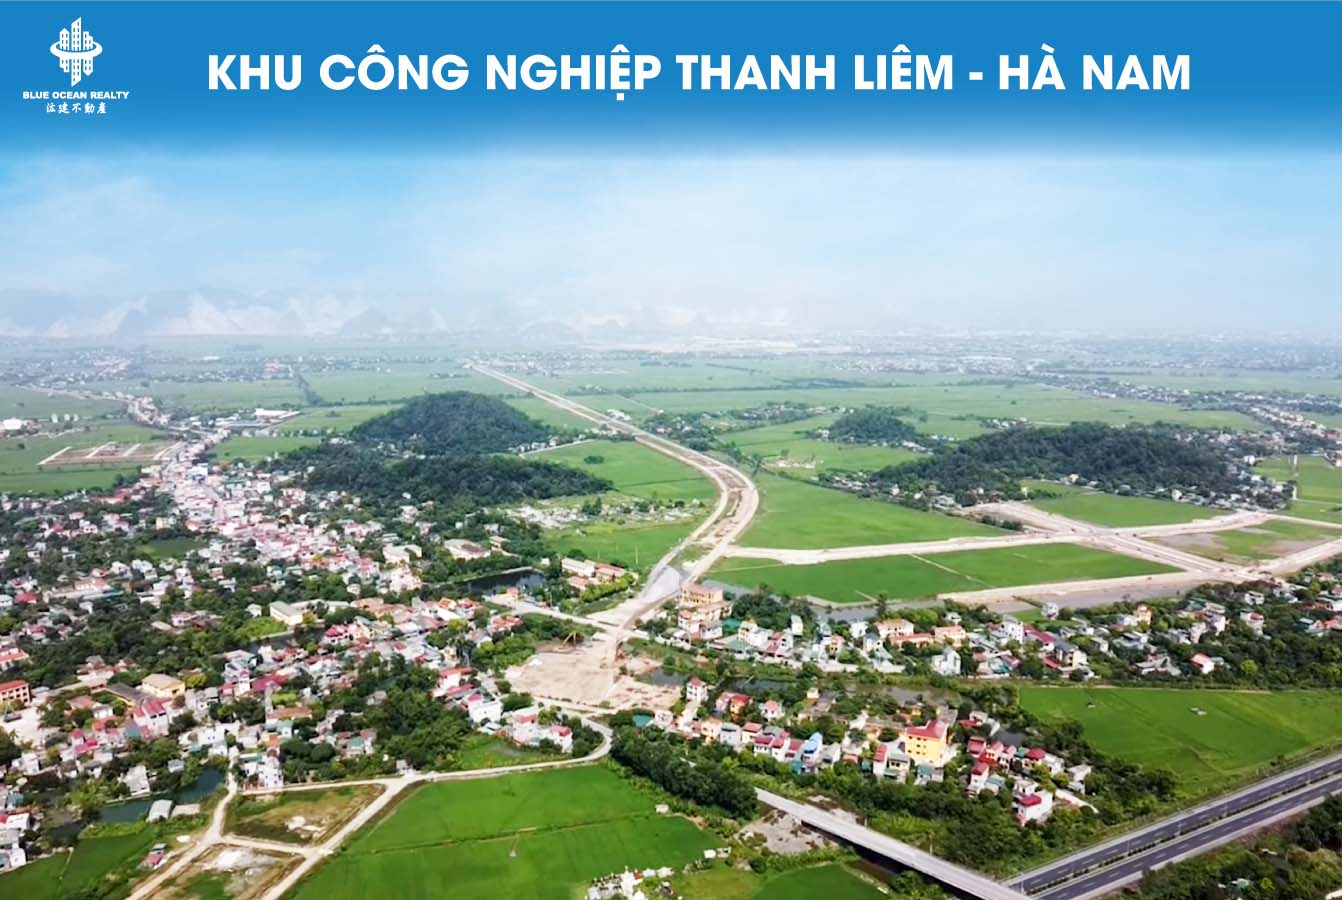 Khu công nghiệp (KCN) Thanh Liêm tỉnh Hà Nam